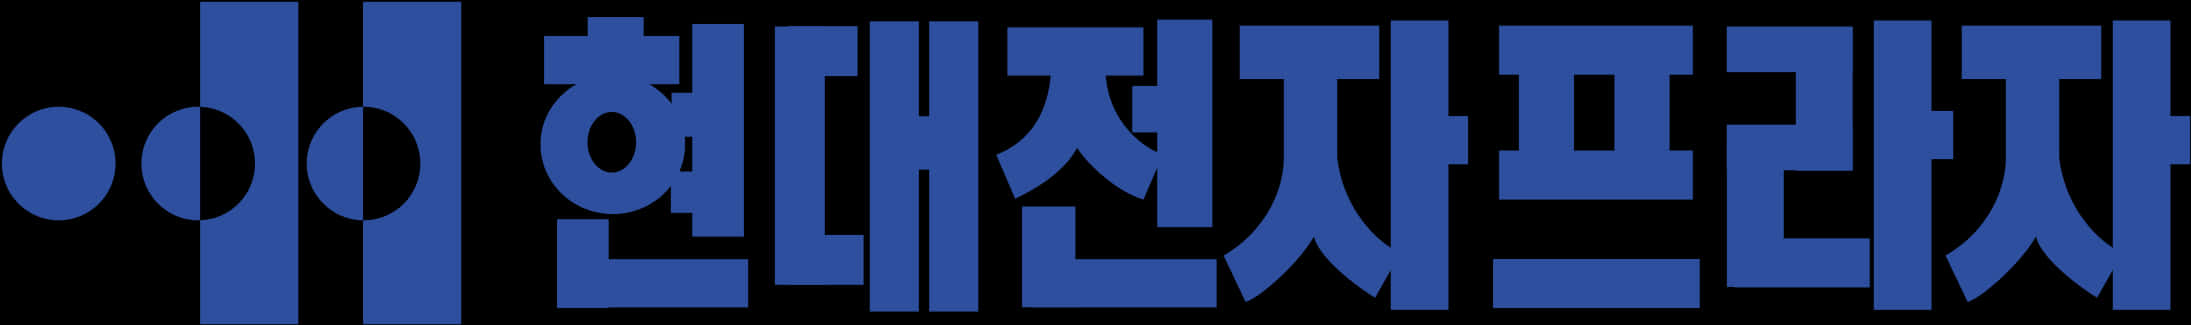 Hyundai Electronics Industries Logo Png Transparent - Hyundai